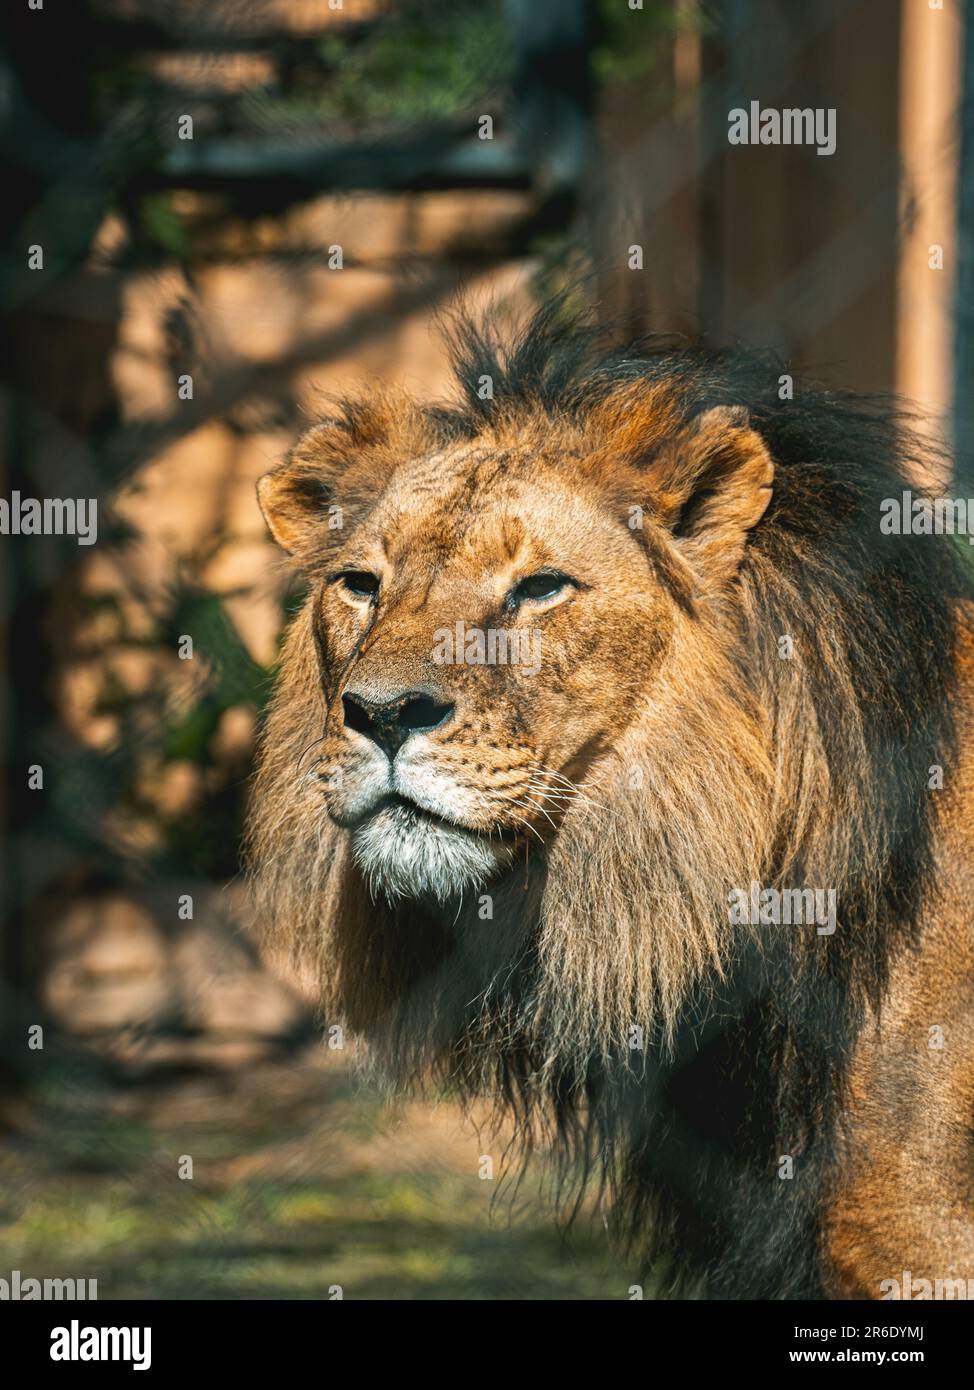 Un lion majestueux se tient seul dans son enclos de zoo. Banque D'Images